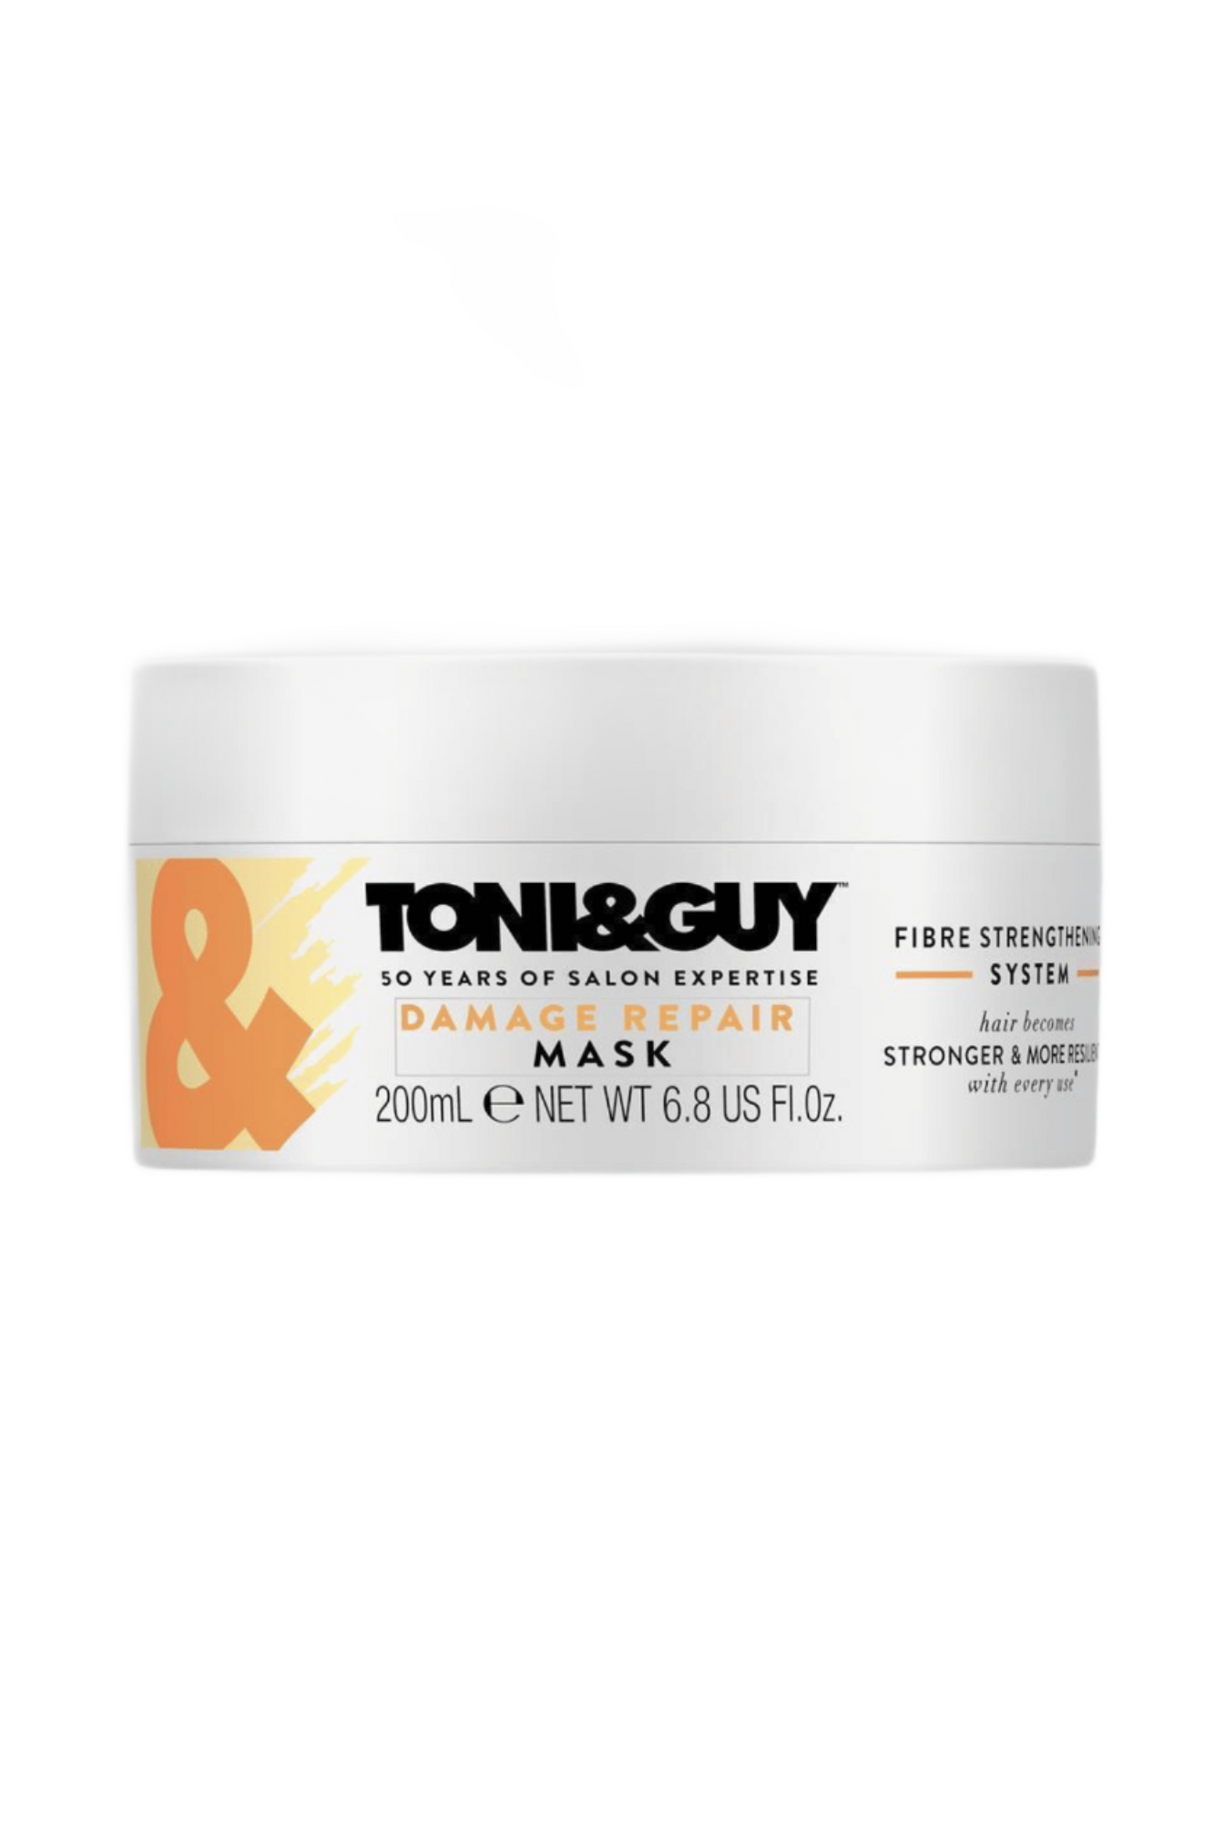 toni&guy hair mask 200ml